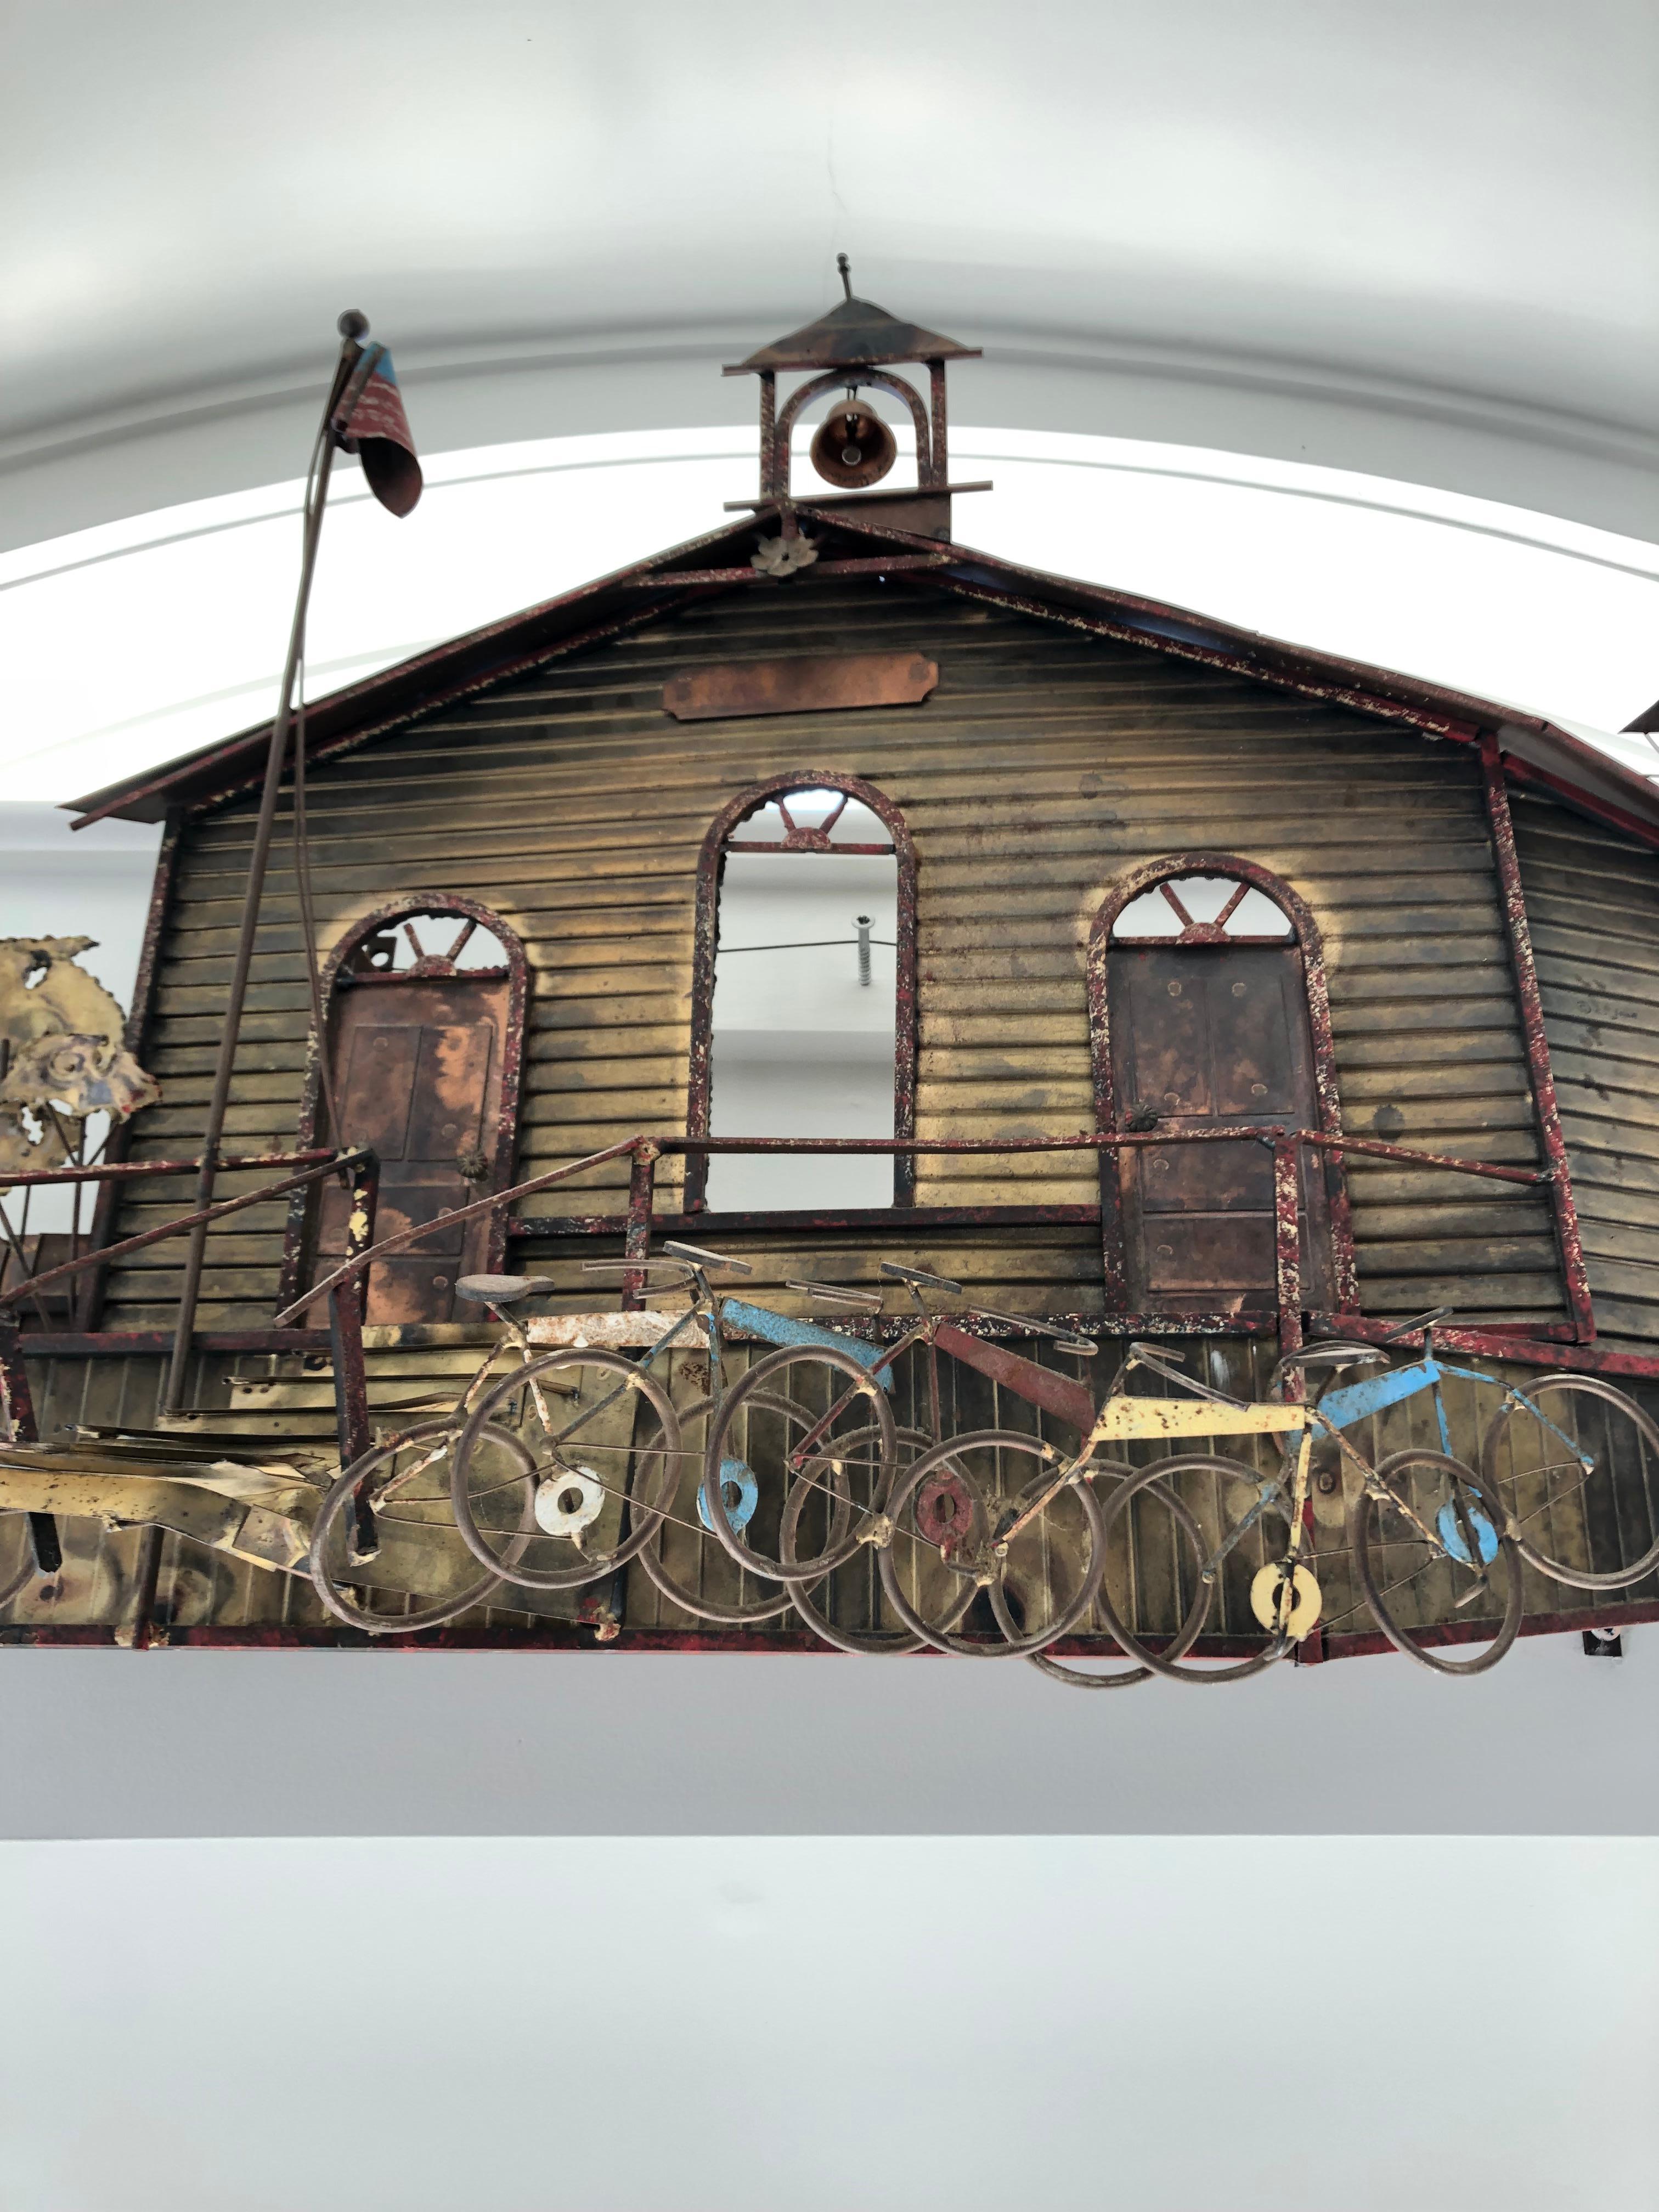 Une grande sculpture murale tridimensionnelle en métal et en laiton, méticuleusement réalisée, représentant une école avec un clocher, des fenêtres et une porte cintrées, des vélos garés devant et un drapeau américain. Plus on regarde, plus on